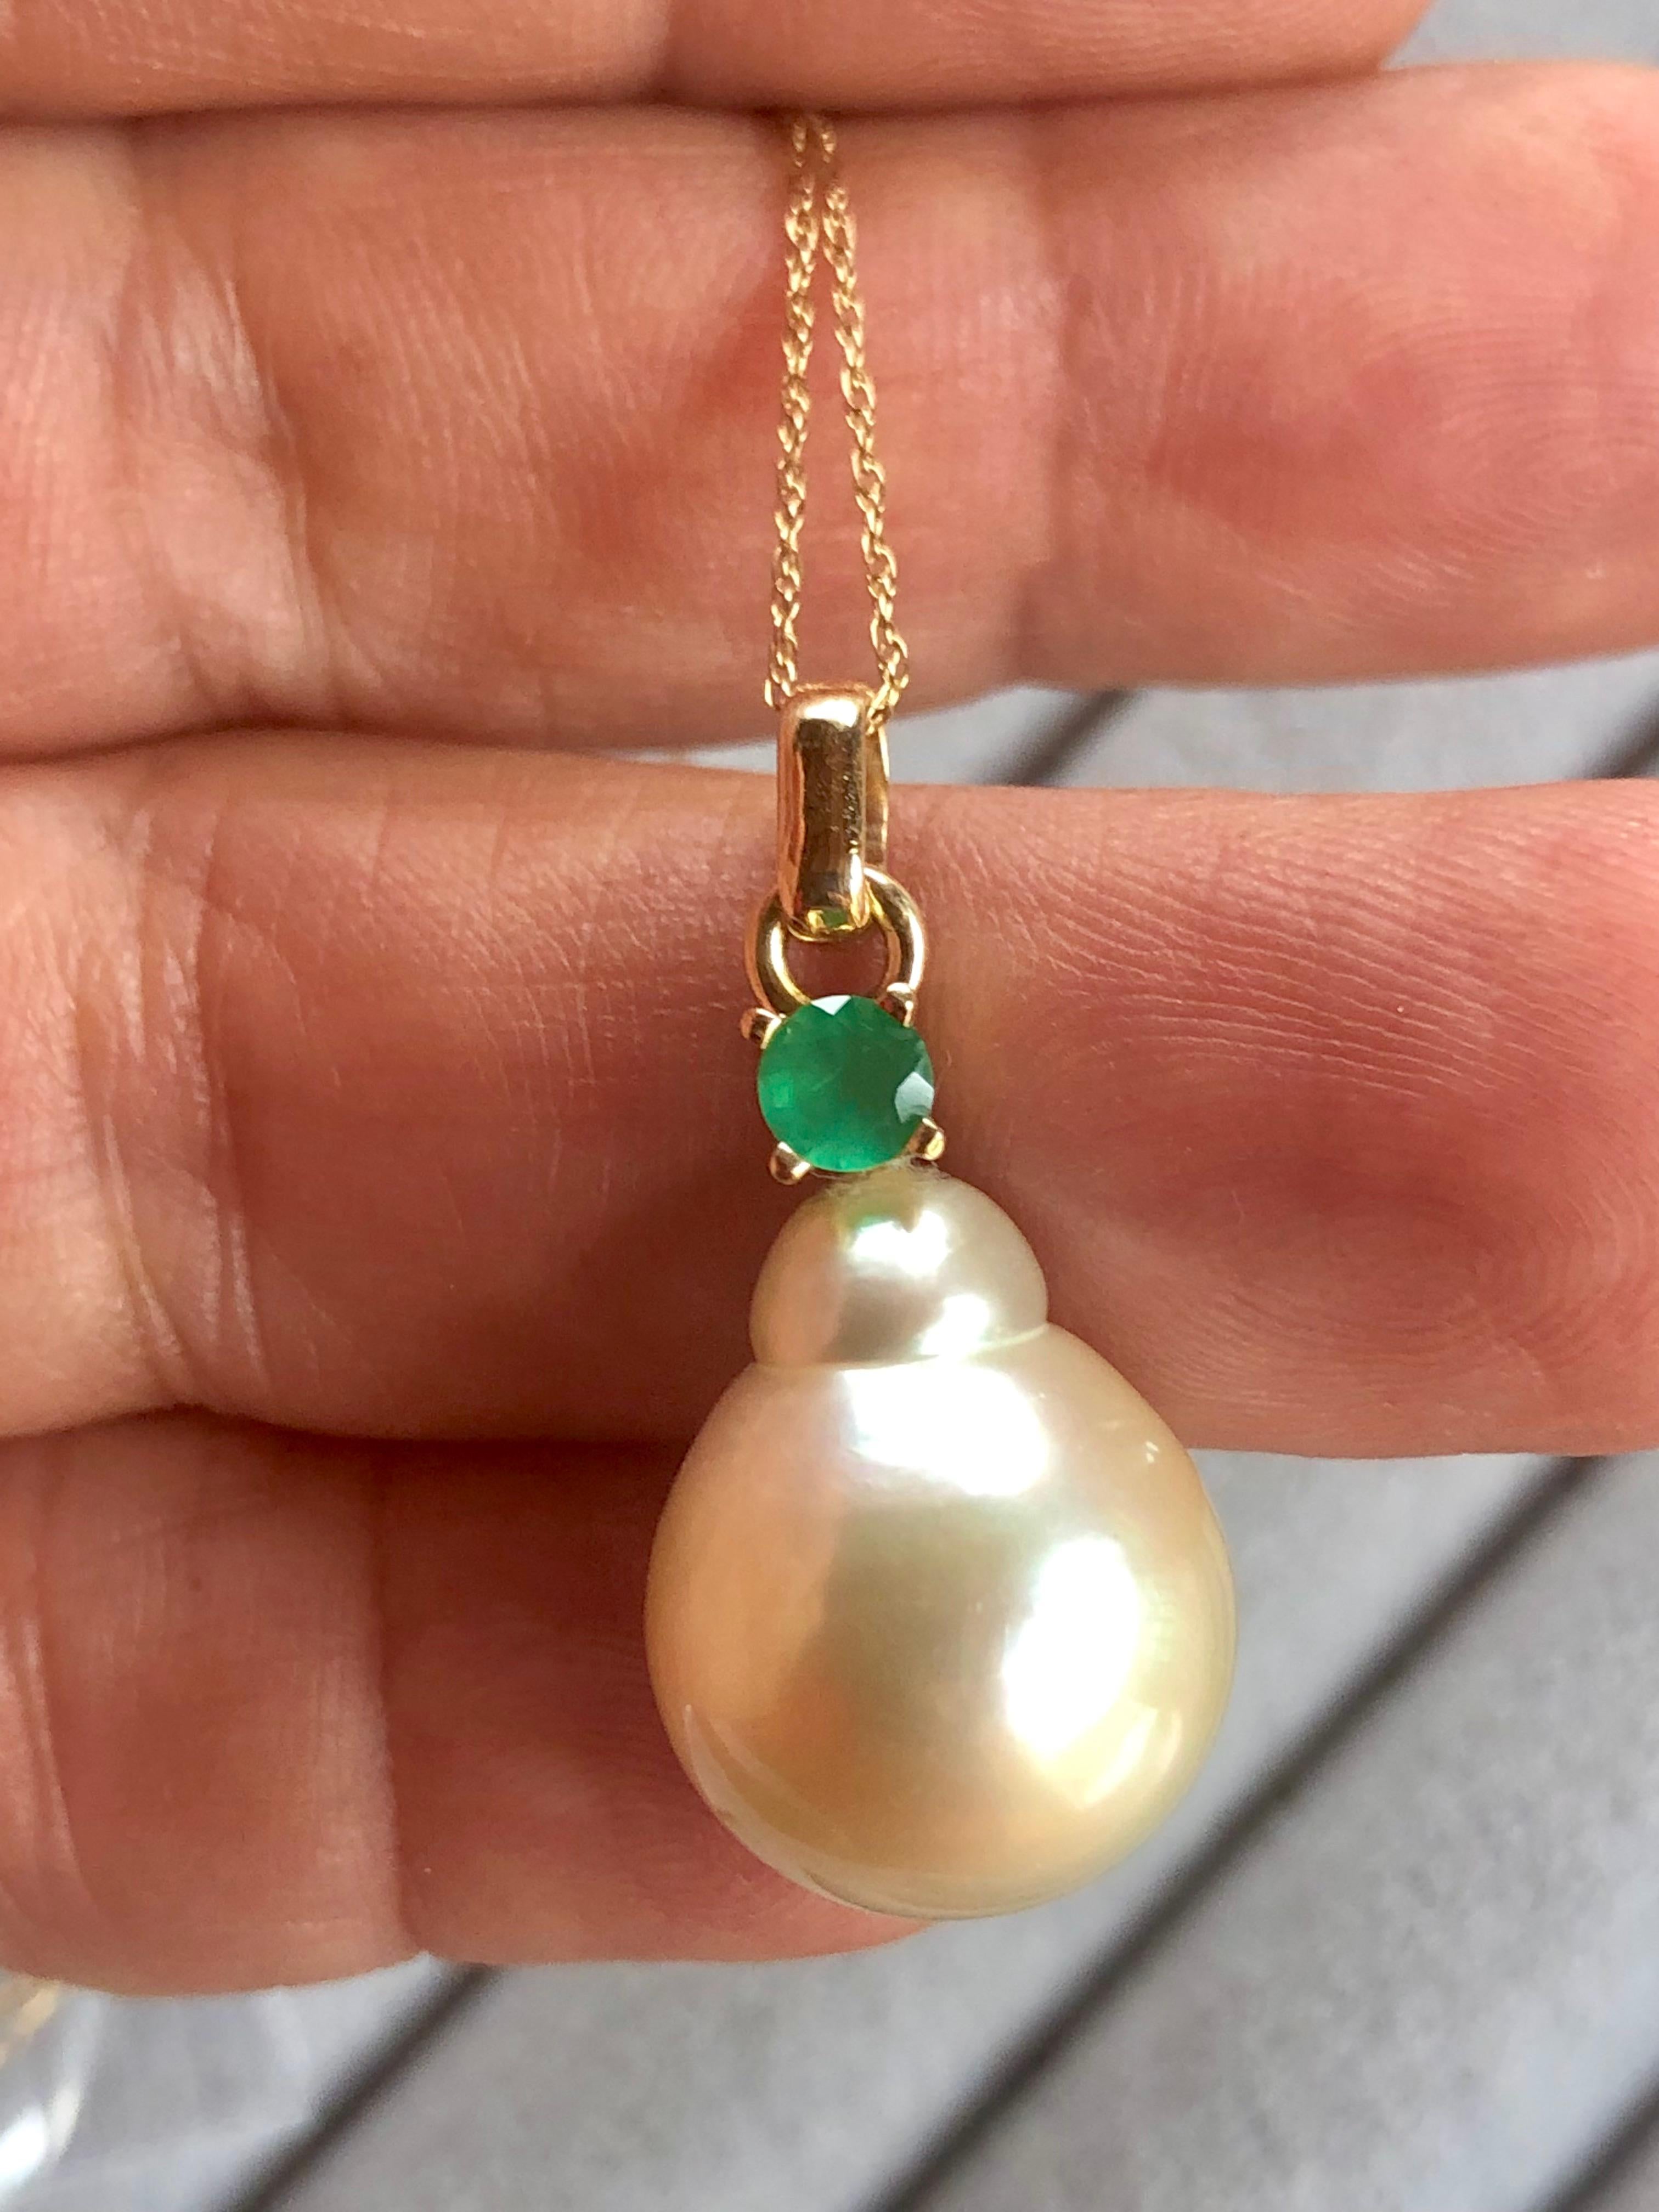 Primäre Steine: 100% kultivieren natürlichen Barock Südsee Perle Anhänger Halskette mit  
Farbe/Oberfläche: Cremefarbenes Gold, mit hervorragendem Glanz, dickem Perlmutt und seidig glatter Oberfläche
Maße der Perlen : 18.00x 14.00mm 
Länge des